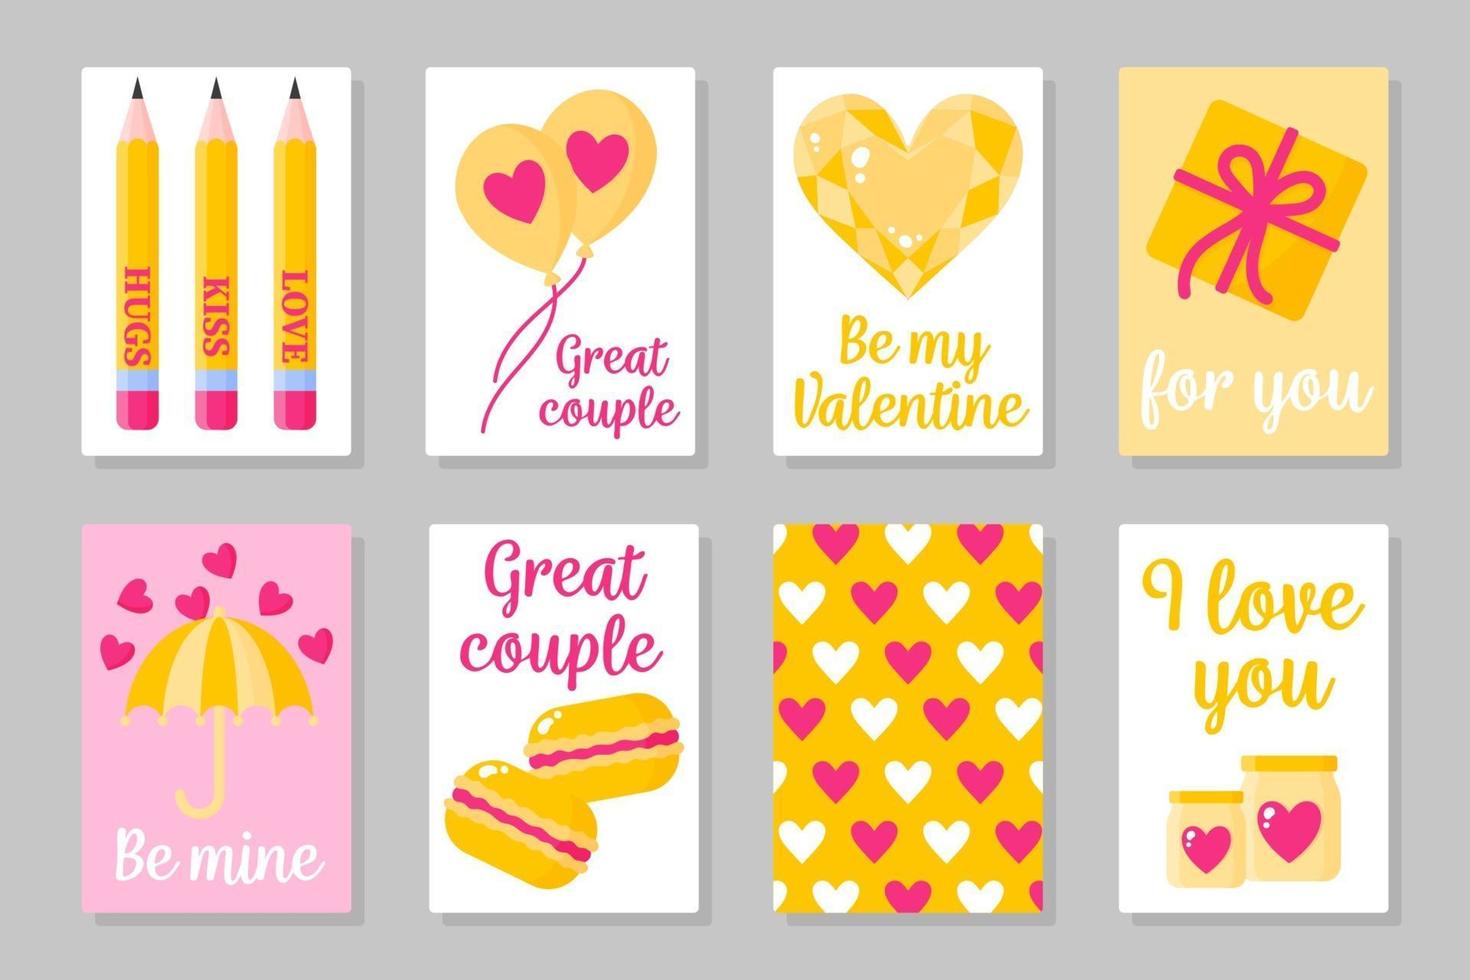 Satz von rosa, weißen und gelben farbigen Karten für Valentinstag oder Hochzeit. Vektor flach isoliert Design